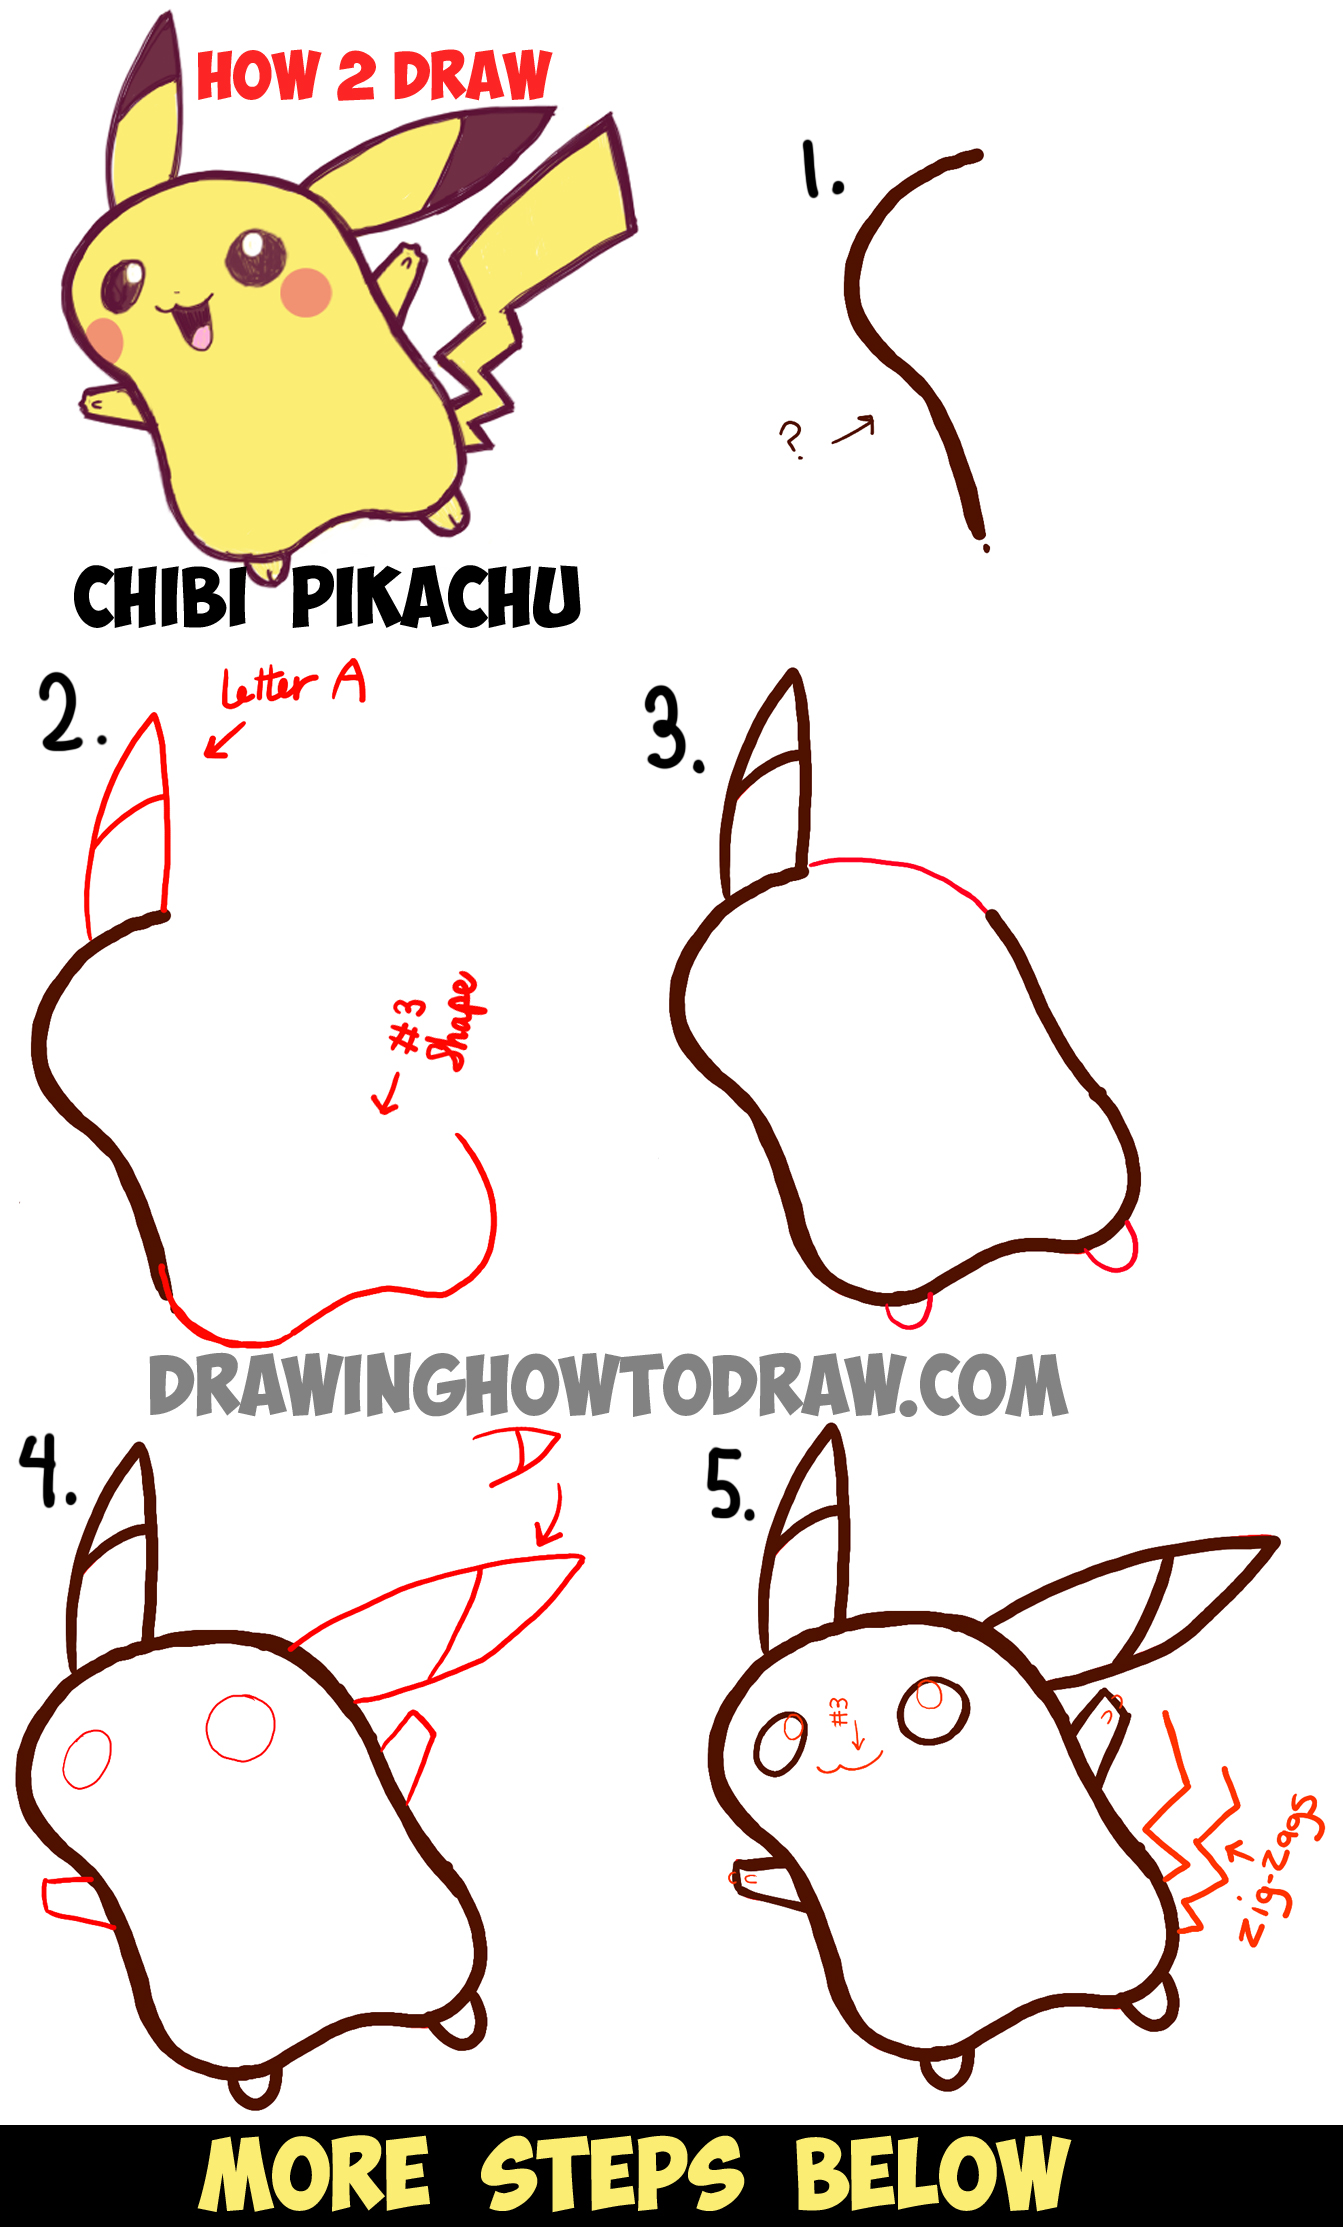 How to Draw Pikachu from Pokemon GO (Pokemon GO) Step by Step |  DrawingTutorials101.com